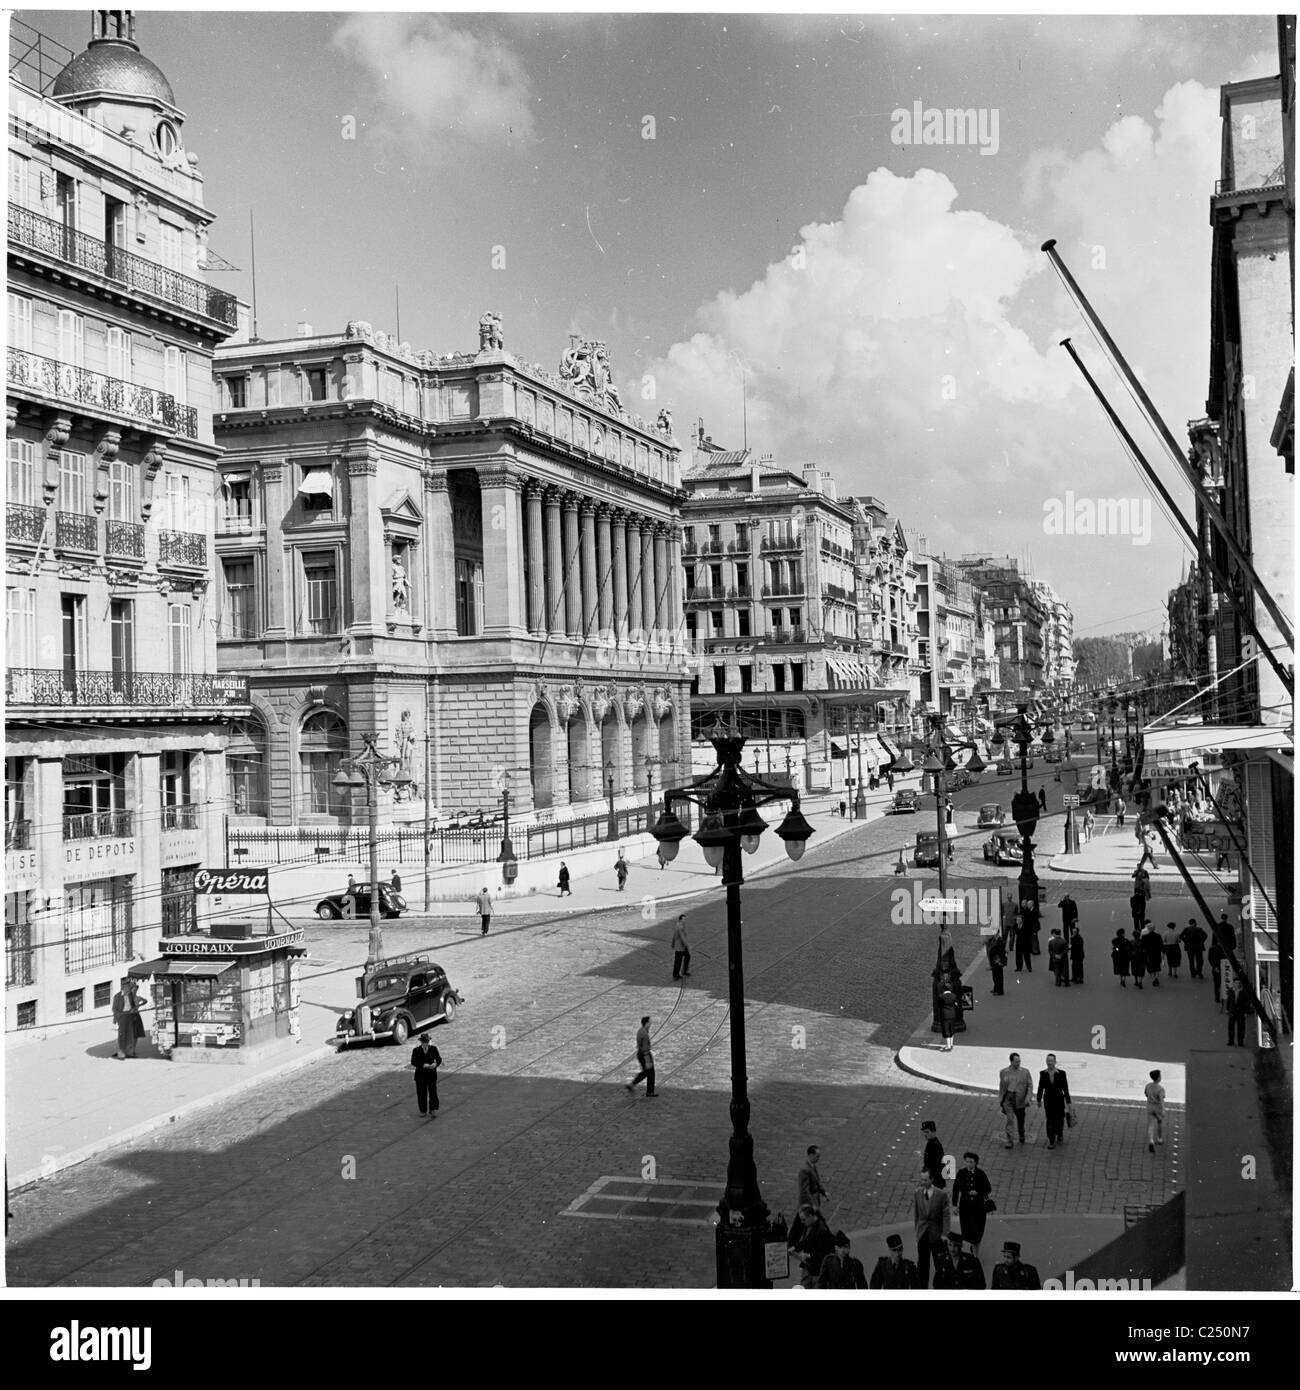 1950s, il acciottolato la Canebiere, nel quartiere vecchio di Marsiglia, Francia, la strada principale della città. Qui sono stati visti gli edifici, le persone e le automobili dell'epoca. Foto Stock